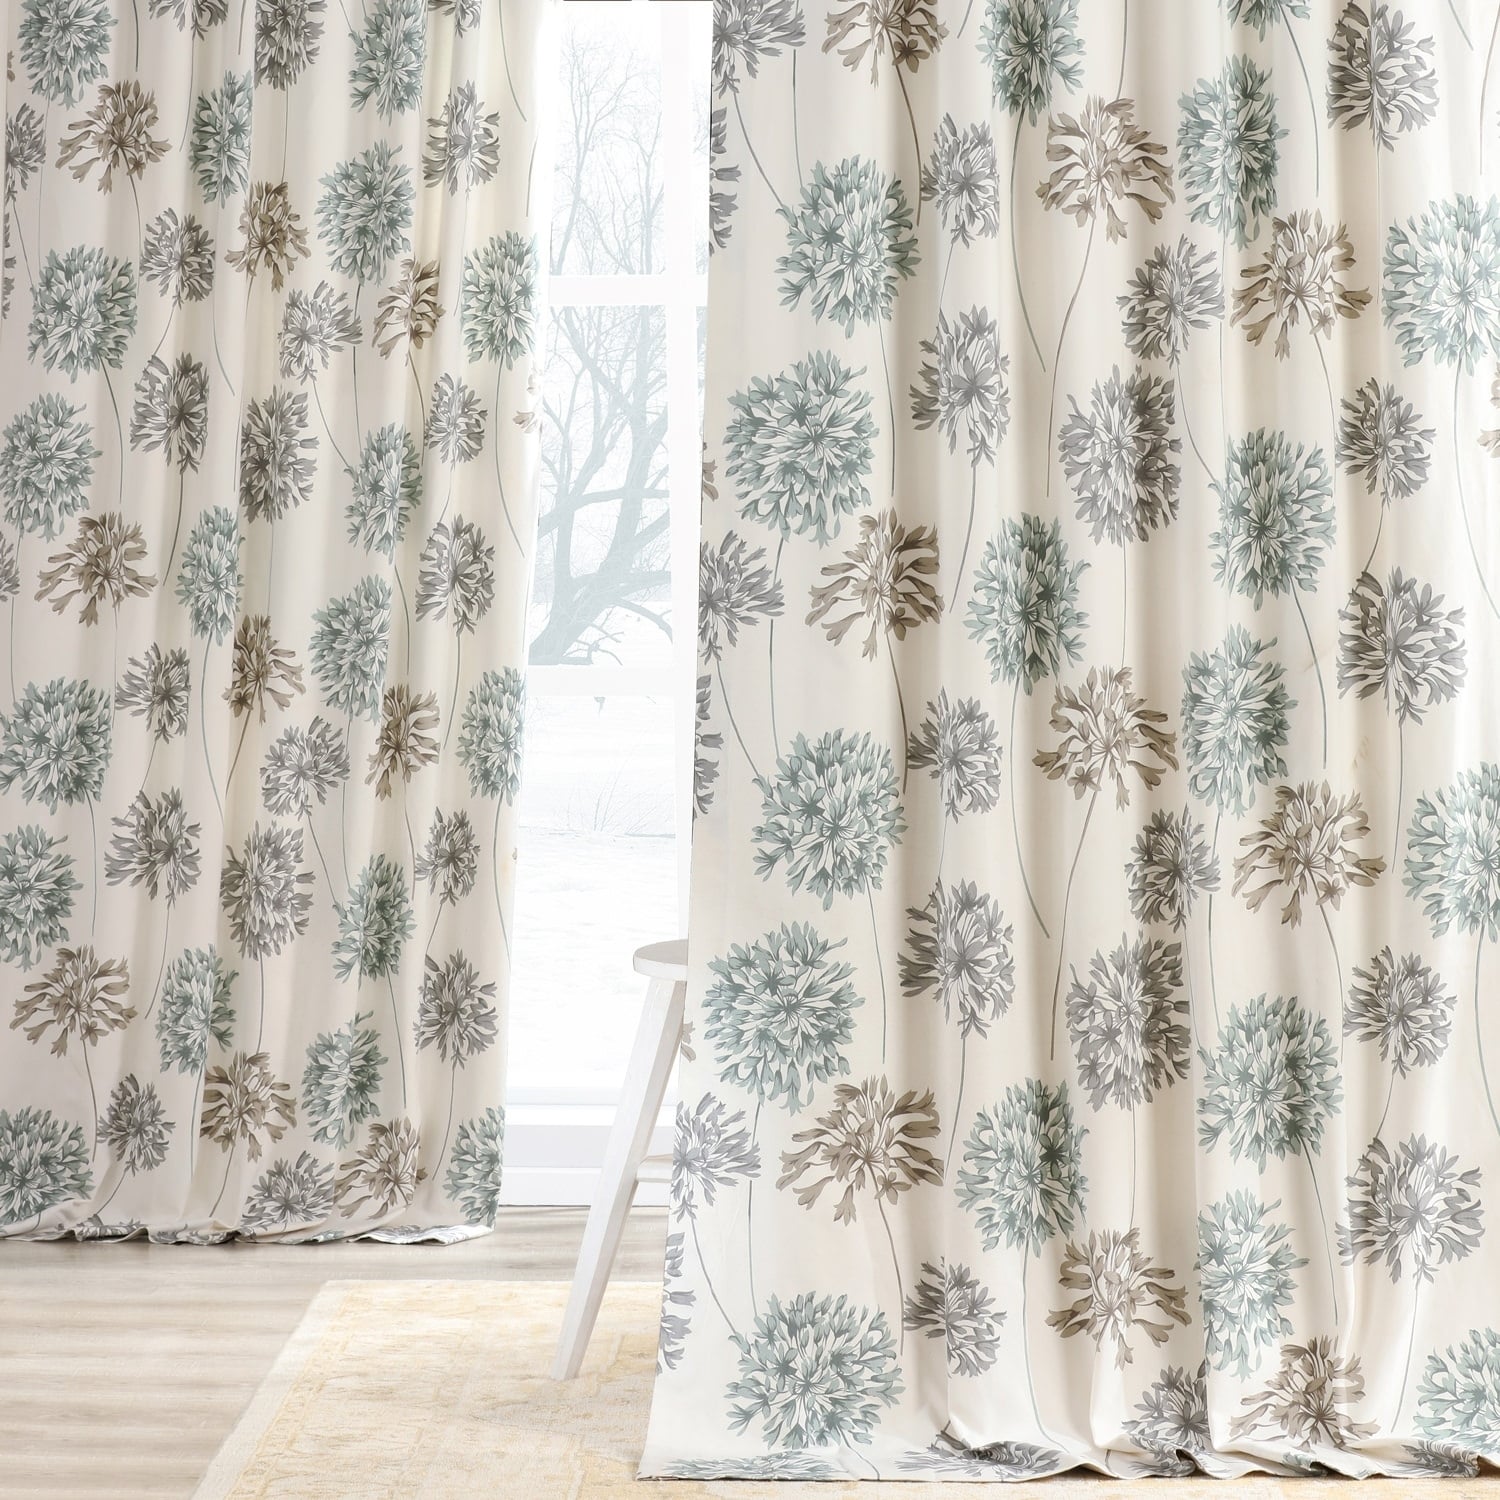 Cotton, Floral Curtains - Bed Bath & Beyond